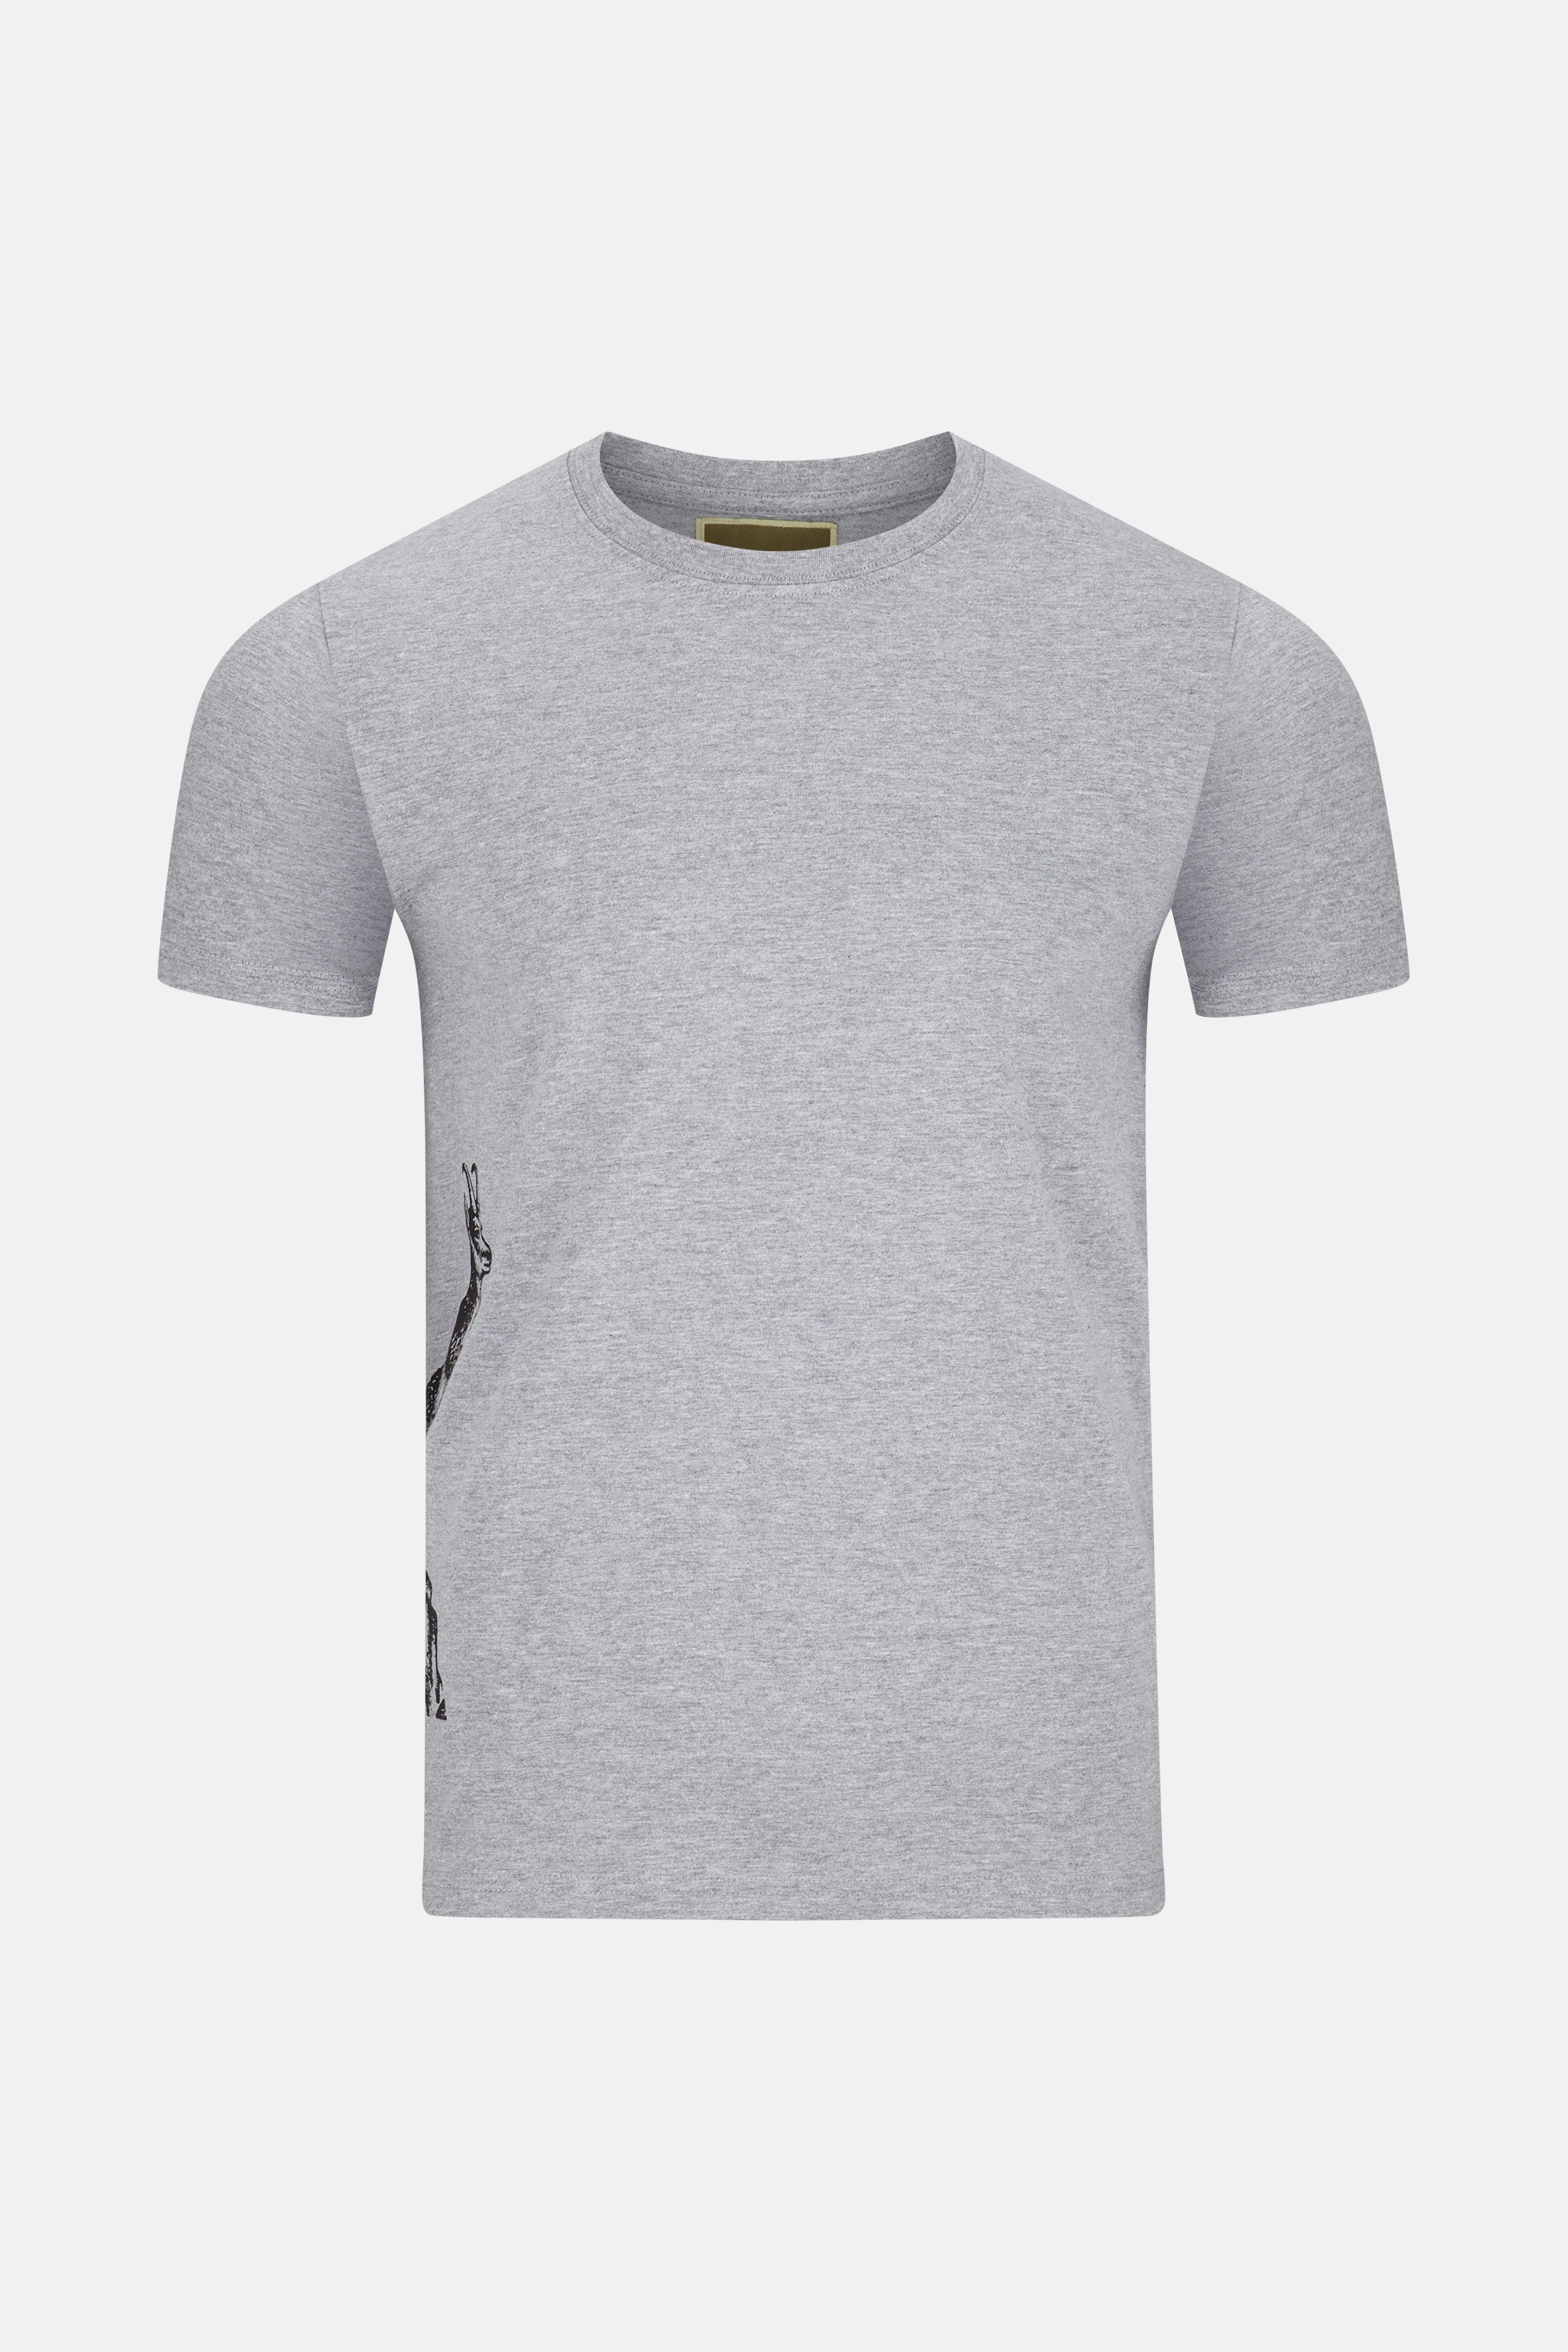 T-Shirt Gams Grau-image